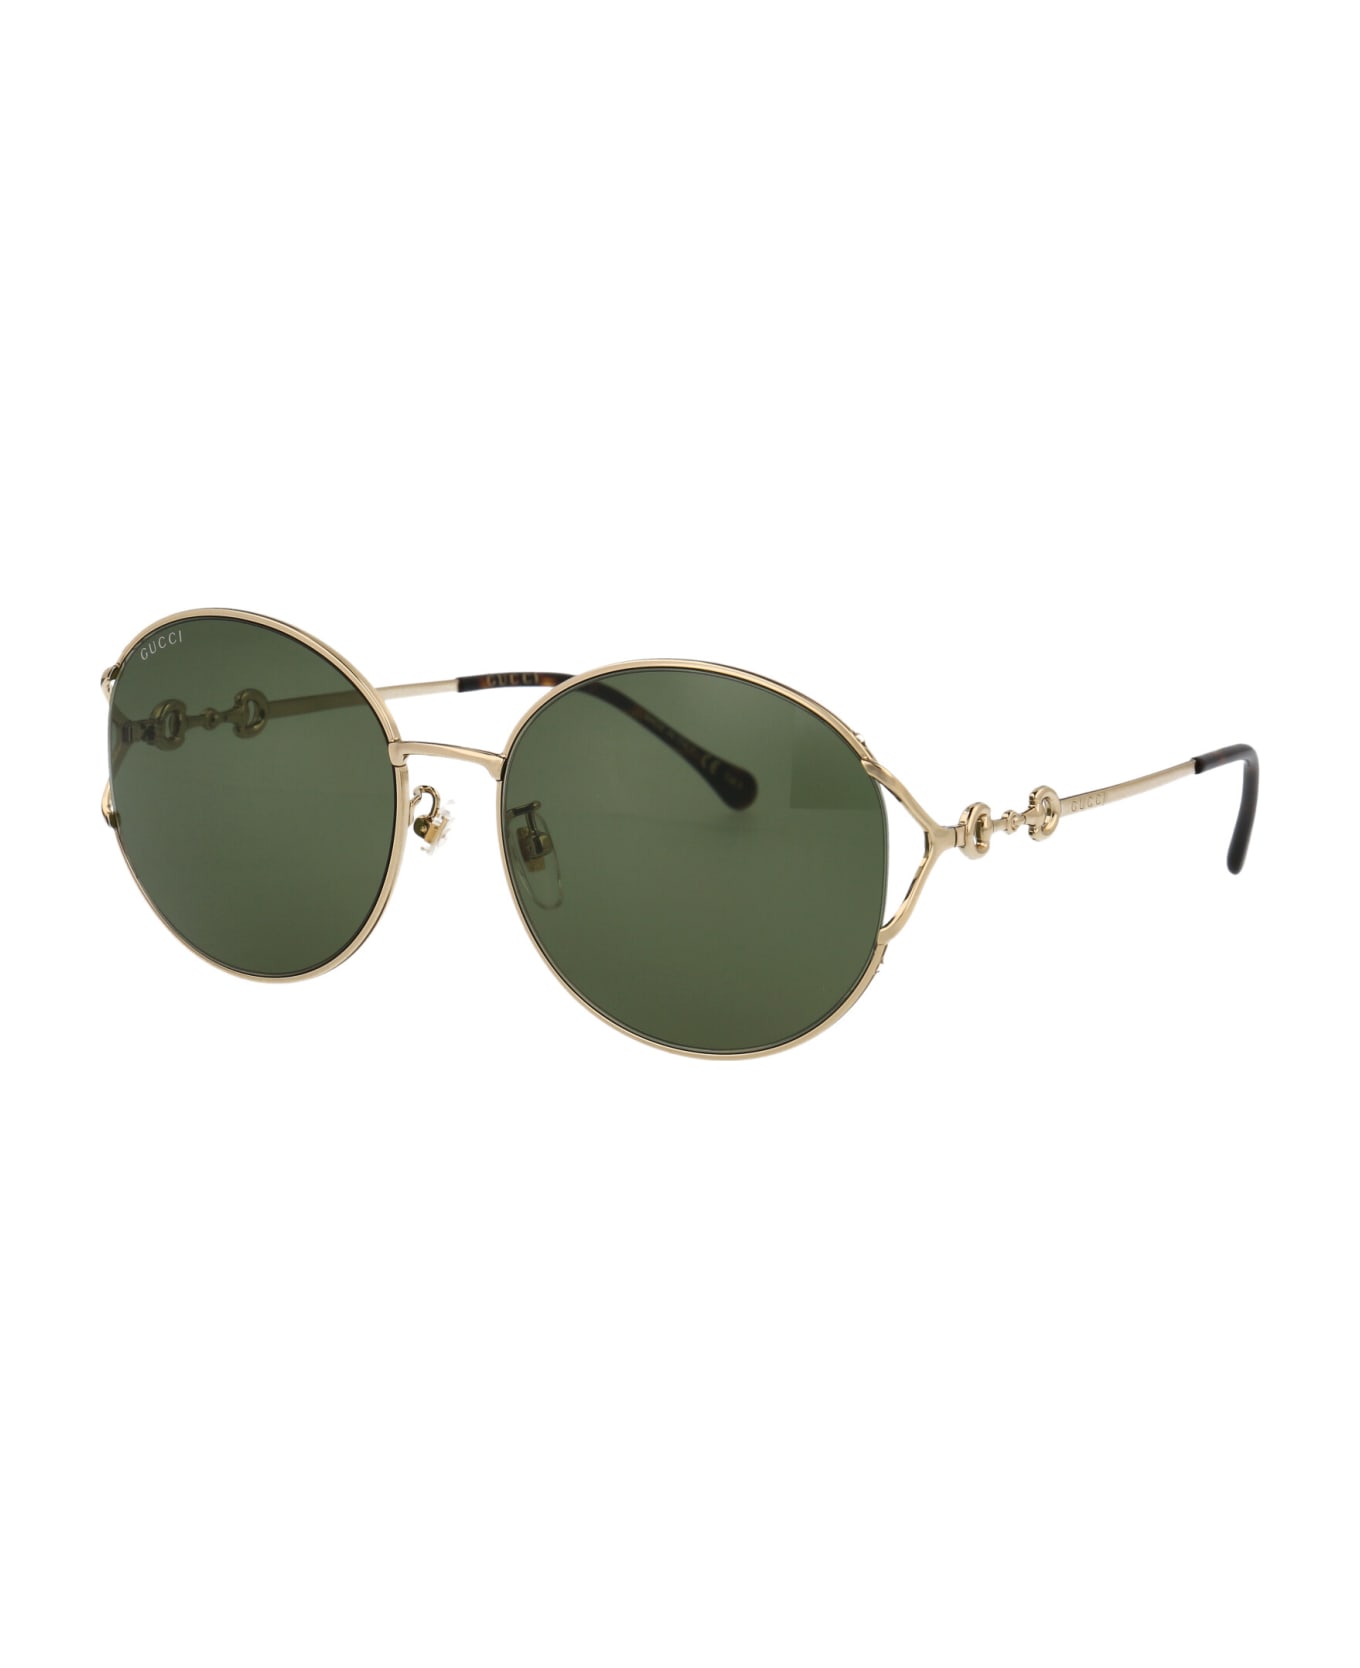 Gucci Eyewear Gg1017sk Sunglasses - 002 GOLD GOLD GREEN